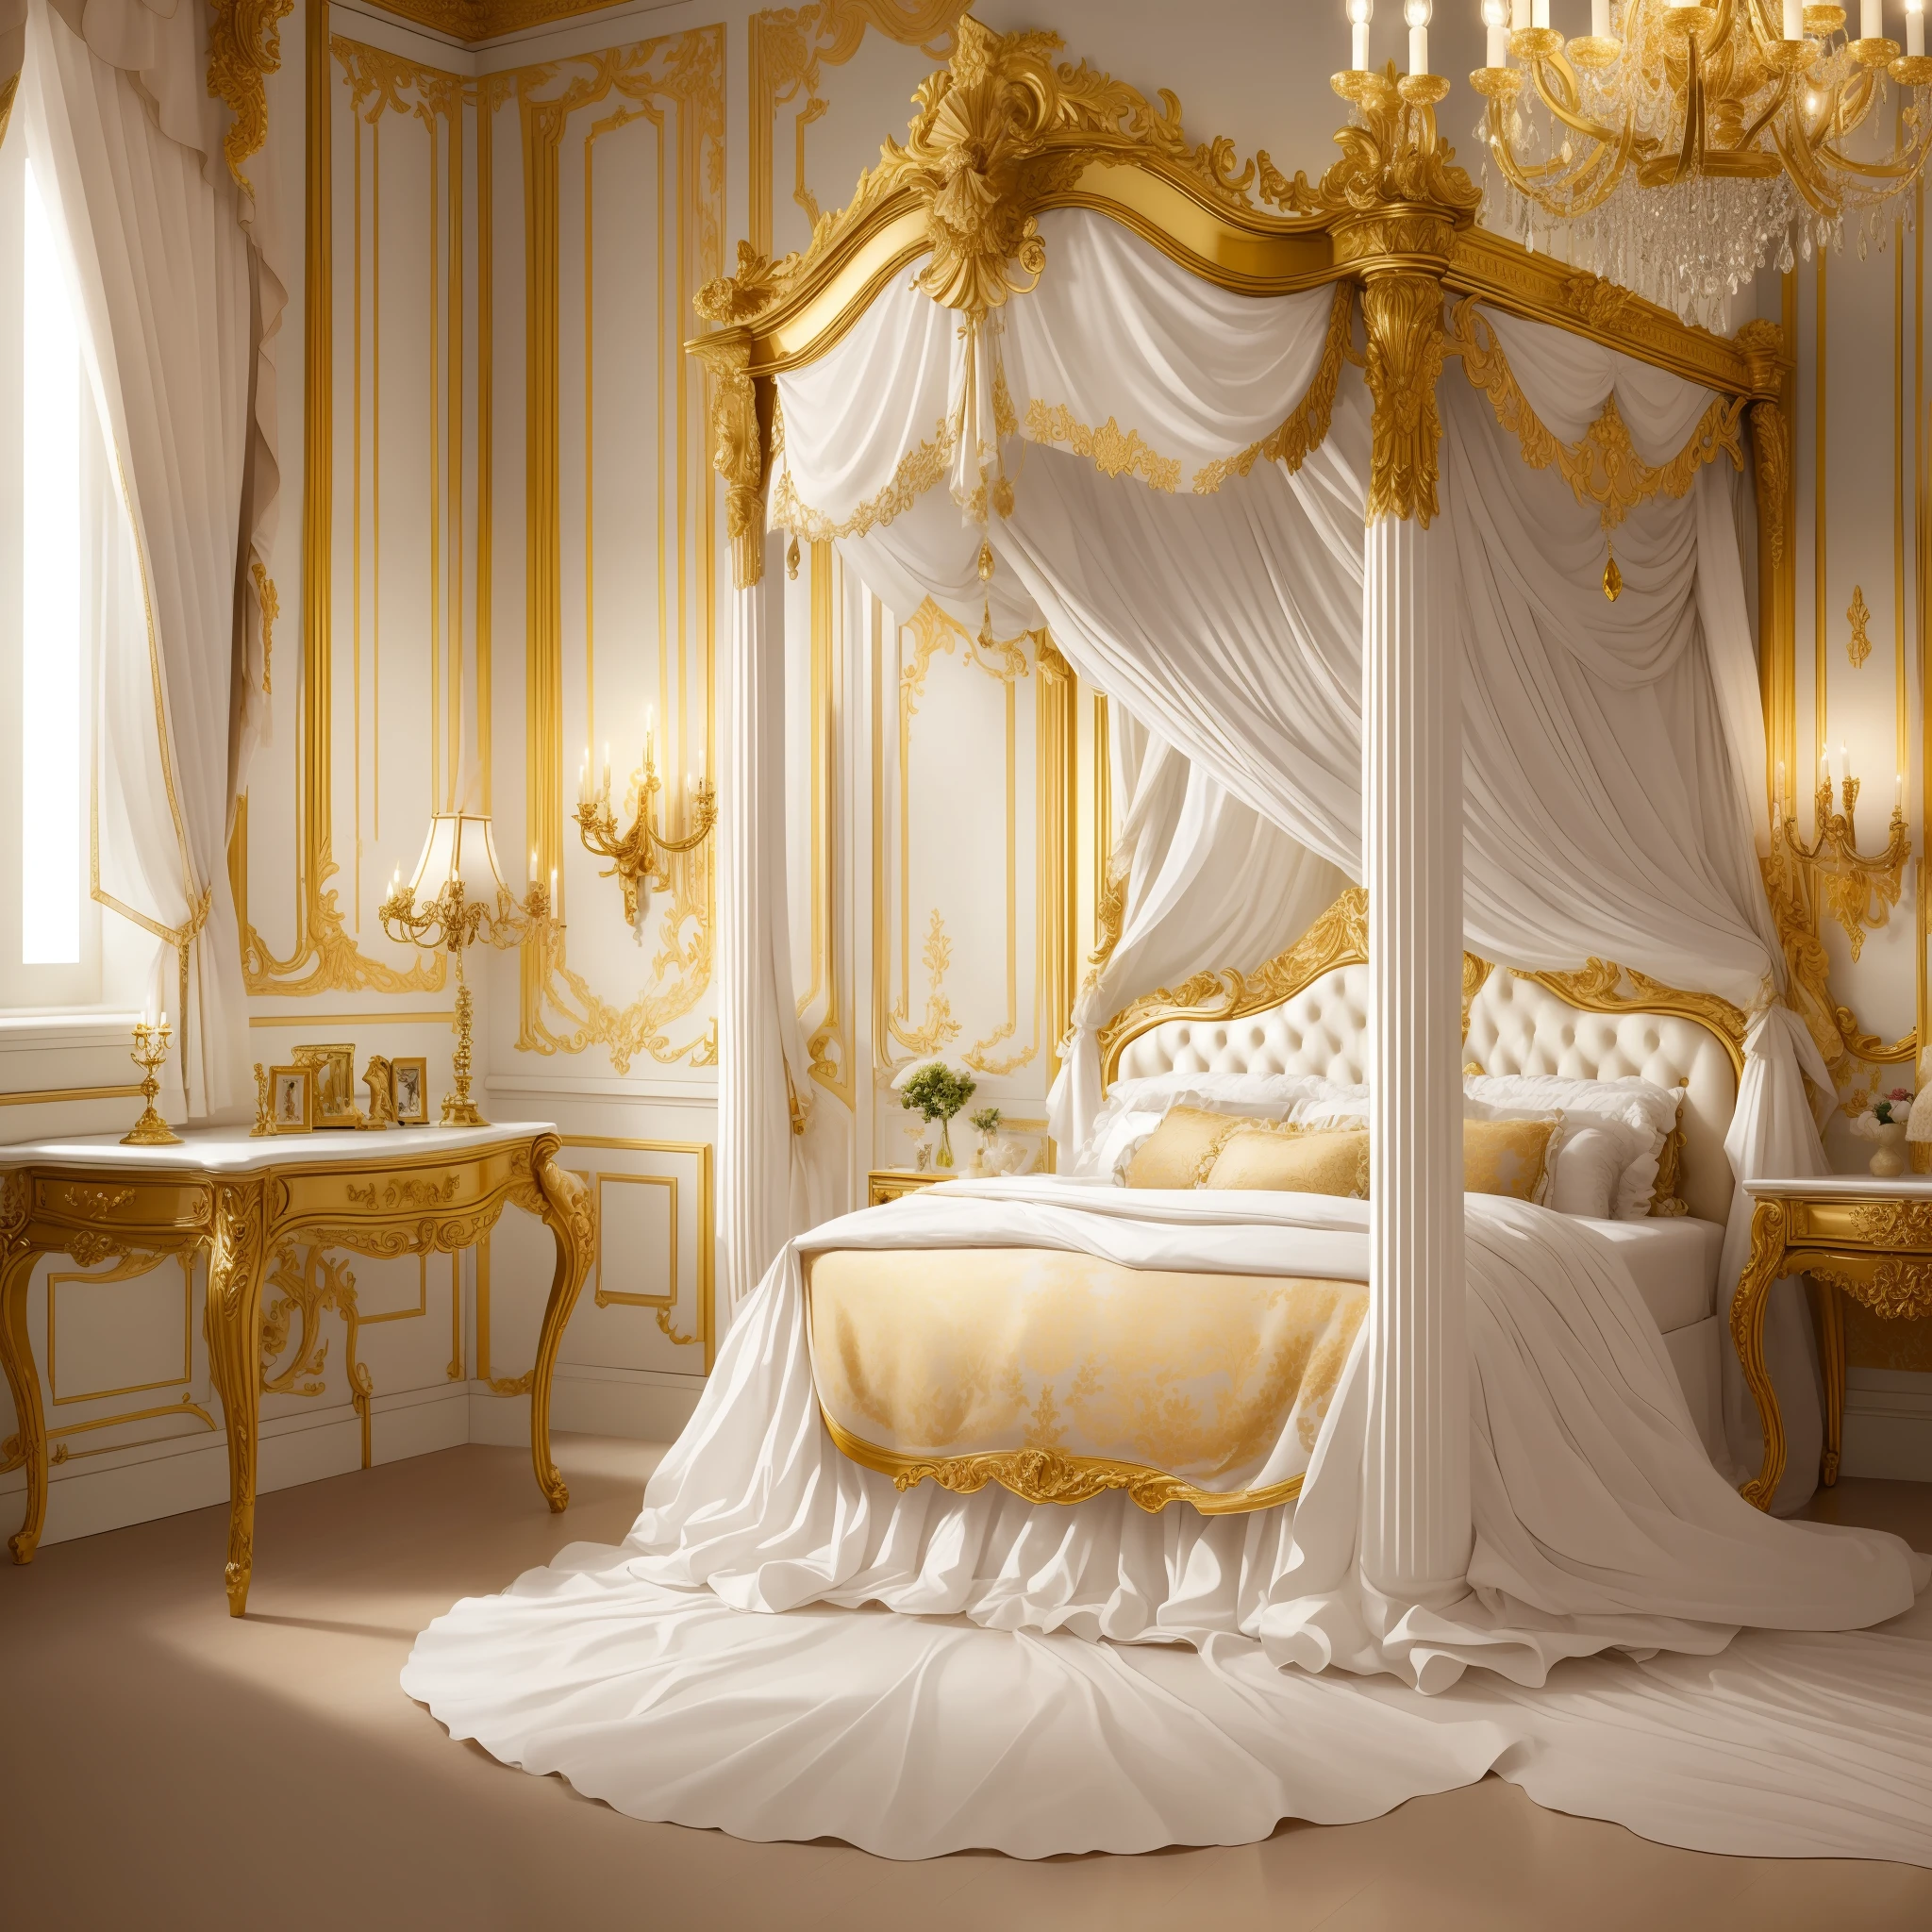 ภาพวาดต้นแบบ，คุณภาพสูง，คุณภาพที่เหมาะสมที่สุด，มาซามุเนะ，รายละเอียดสุดยอด，ภายในห้อง，European palace bedroom โต๊ะเครื่องแป้ง,การตกแต่งที่หรูหรา，สไตล์คลาสสิกยุโรป，สีทอง，กระจกเก็บรายละเอียดไหม，โต๊ะเครื่องแป้ง，โต๊ะเครื่องแป้ง，ห้องนอนนีโอคลาสสิก，เตียง，ตู้เสื้อผ้า，ผ้าม่าน，เครื่องประดับคริสตัลหลากสีบนพื้นผิวหน้าต่าง，แสงไฟอันอ่อนโยน，สุดยอดผลิตภัณฑ์บำรุงผิว，มีการเน้นรายละเอียด，เอฟเฟกต์แสงและเงาที่มีรายละเอียดสูง。